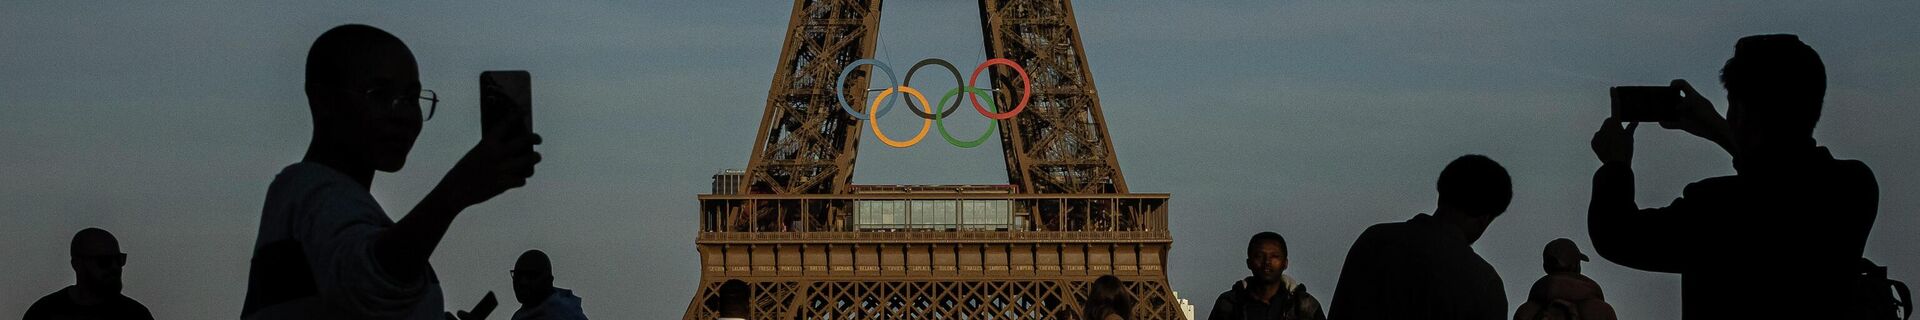 Олимпийские игры в Париже — 2024 - Sputnik Кыргызстан, 1920